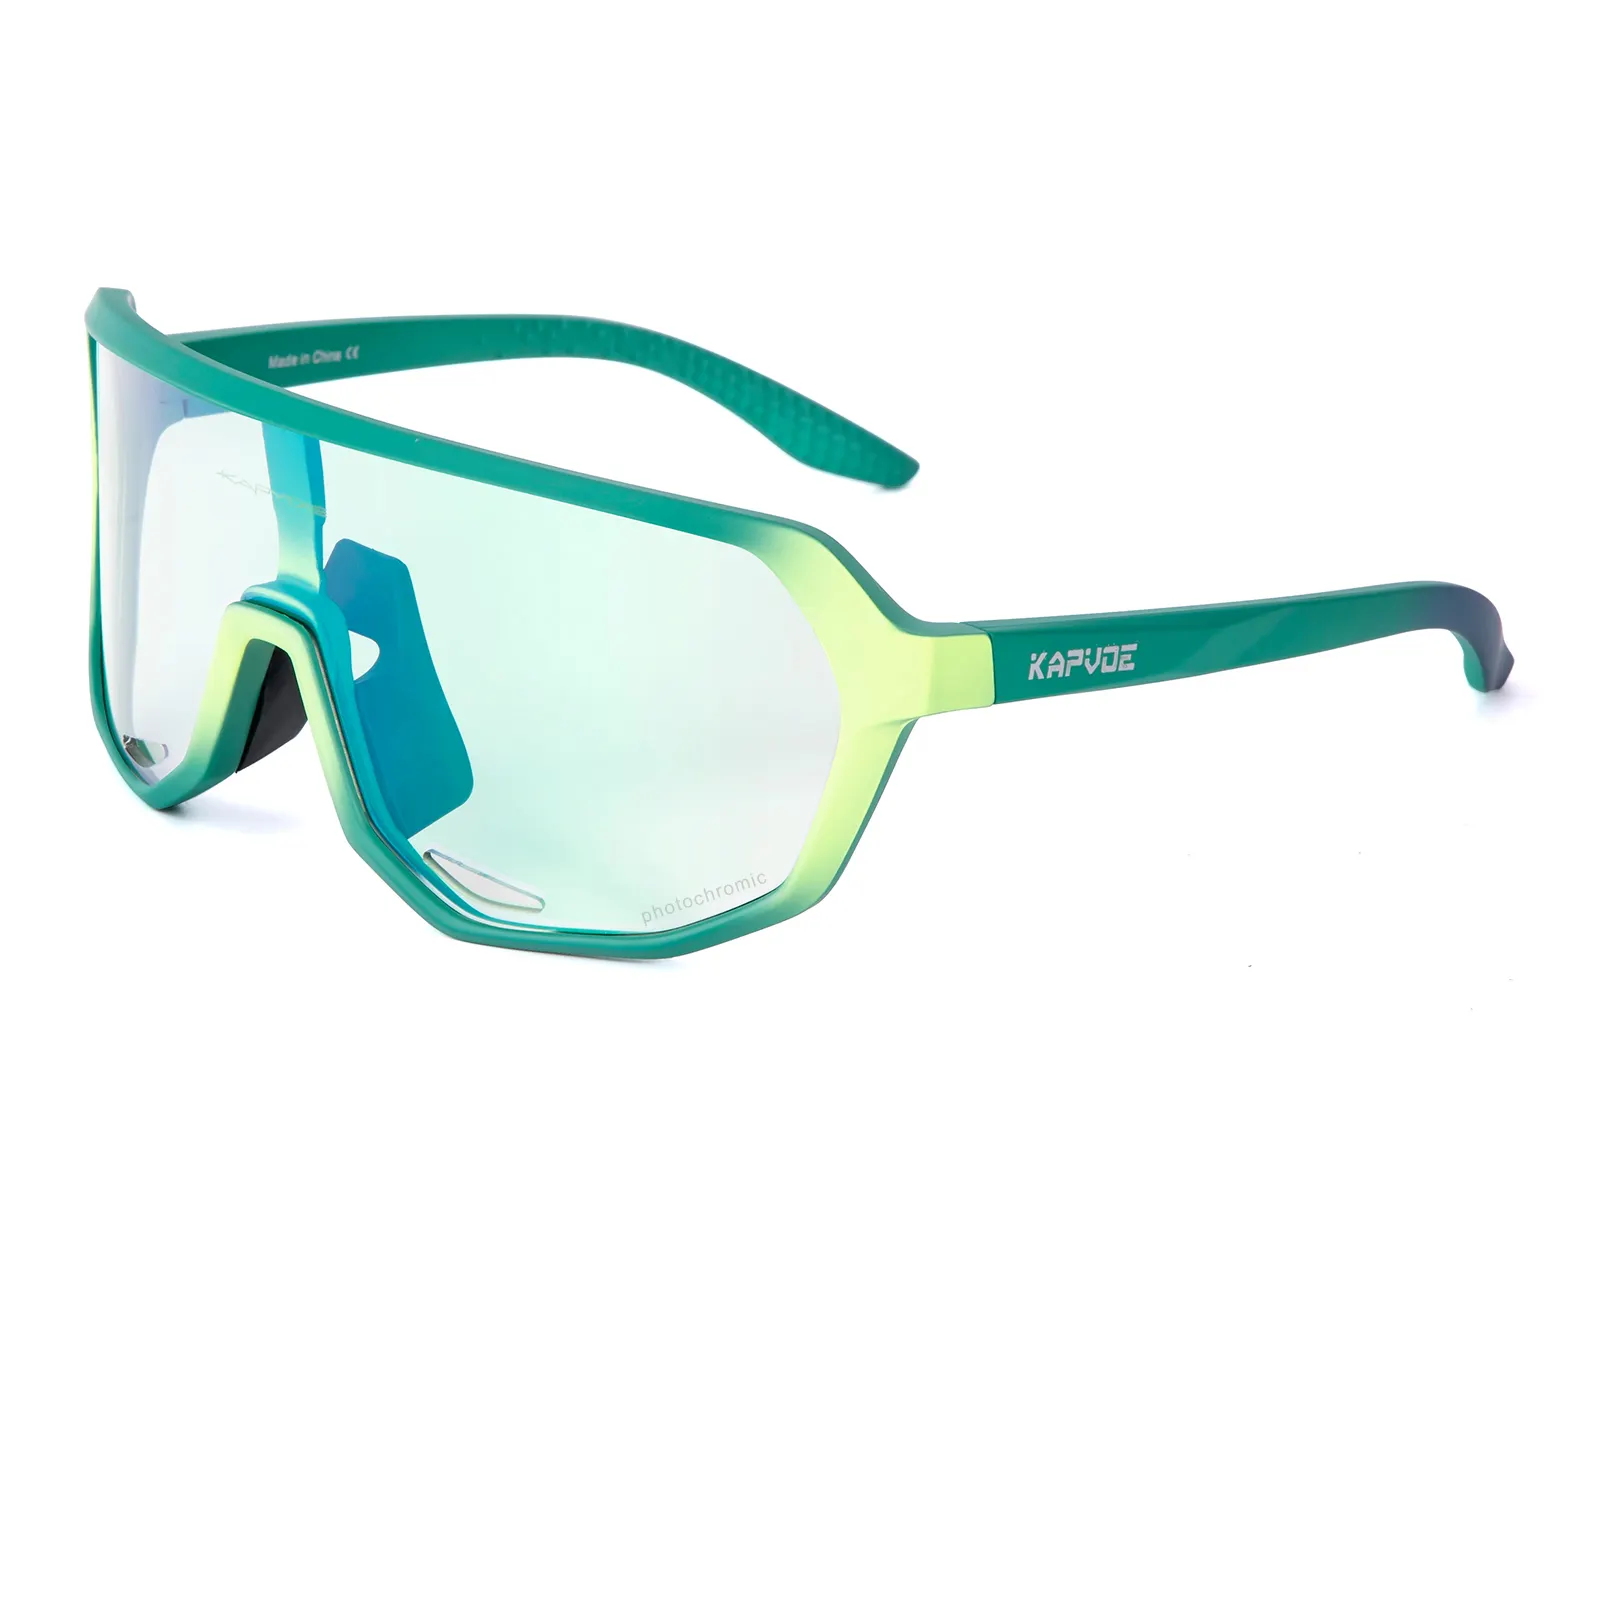 Óculos de bicicleta personalizado com logotipo, óculos verde fotocromático para uso ao ar livre, com uv400, para praia e vôlei